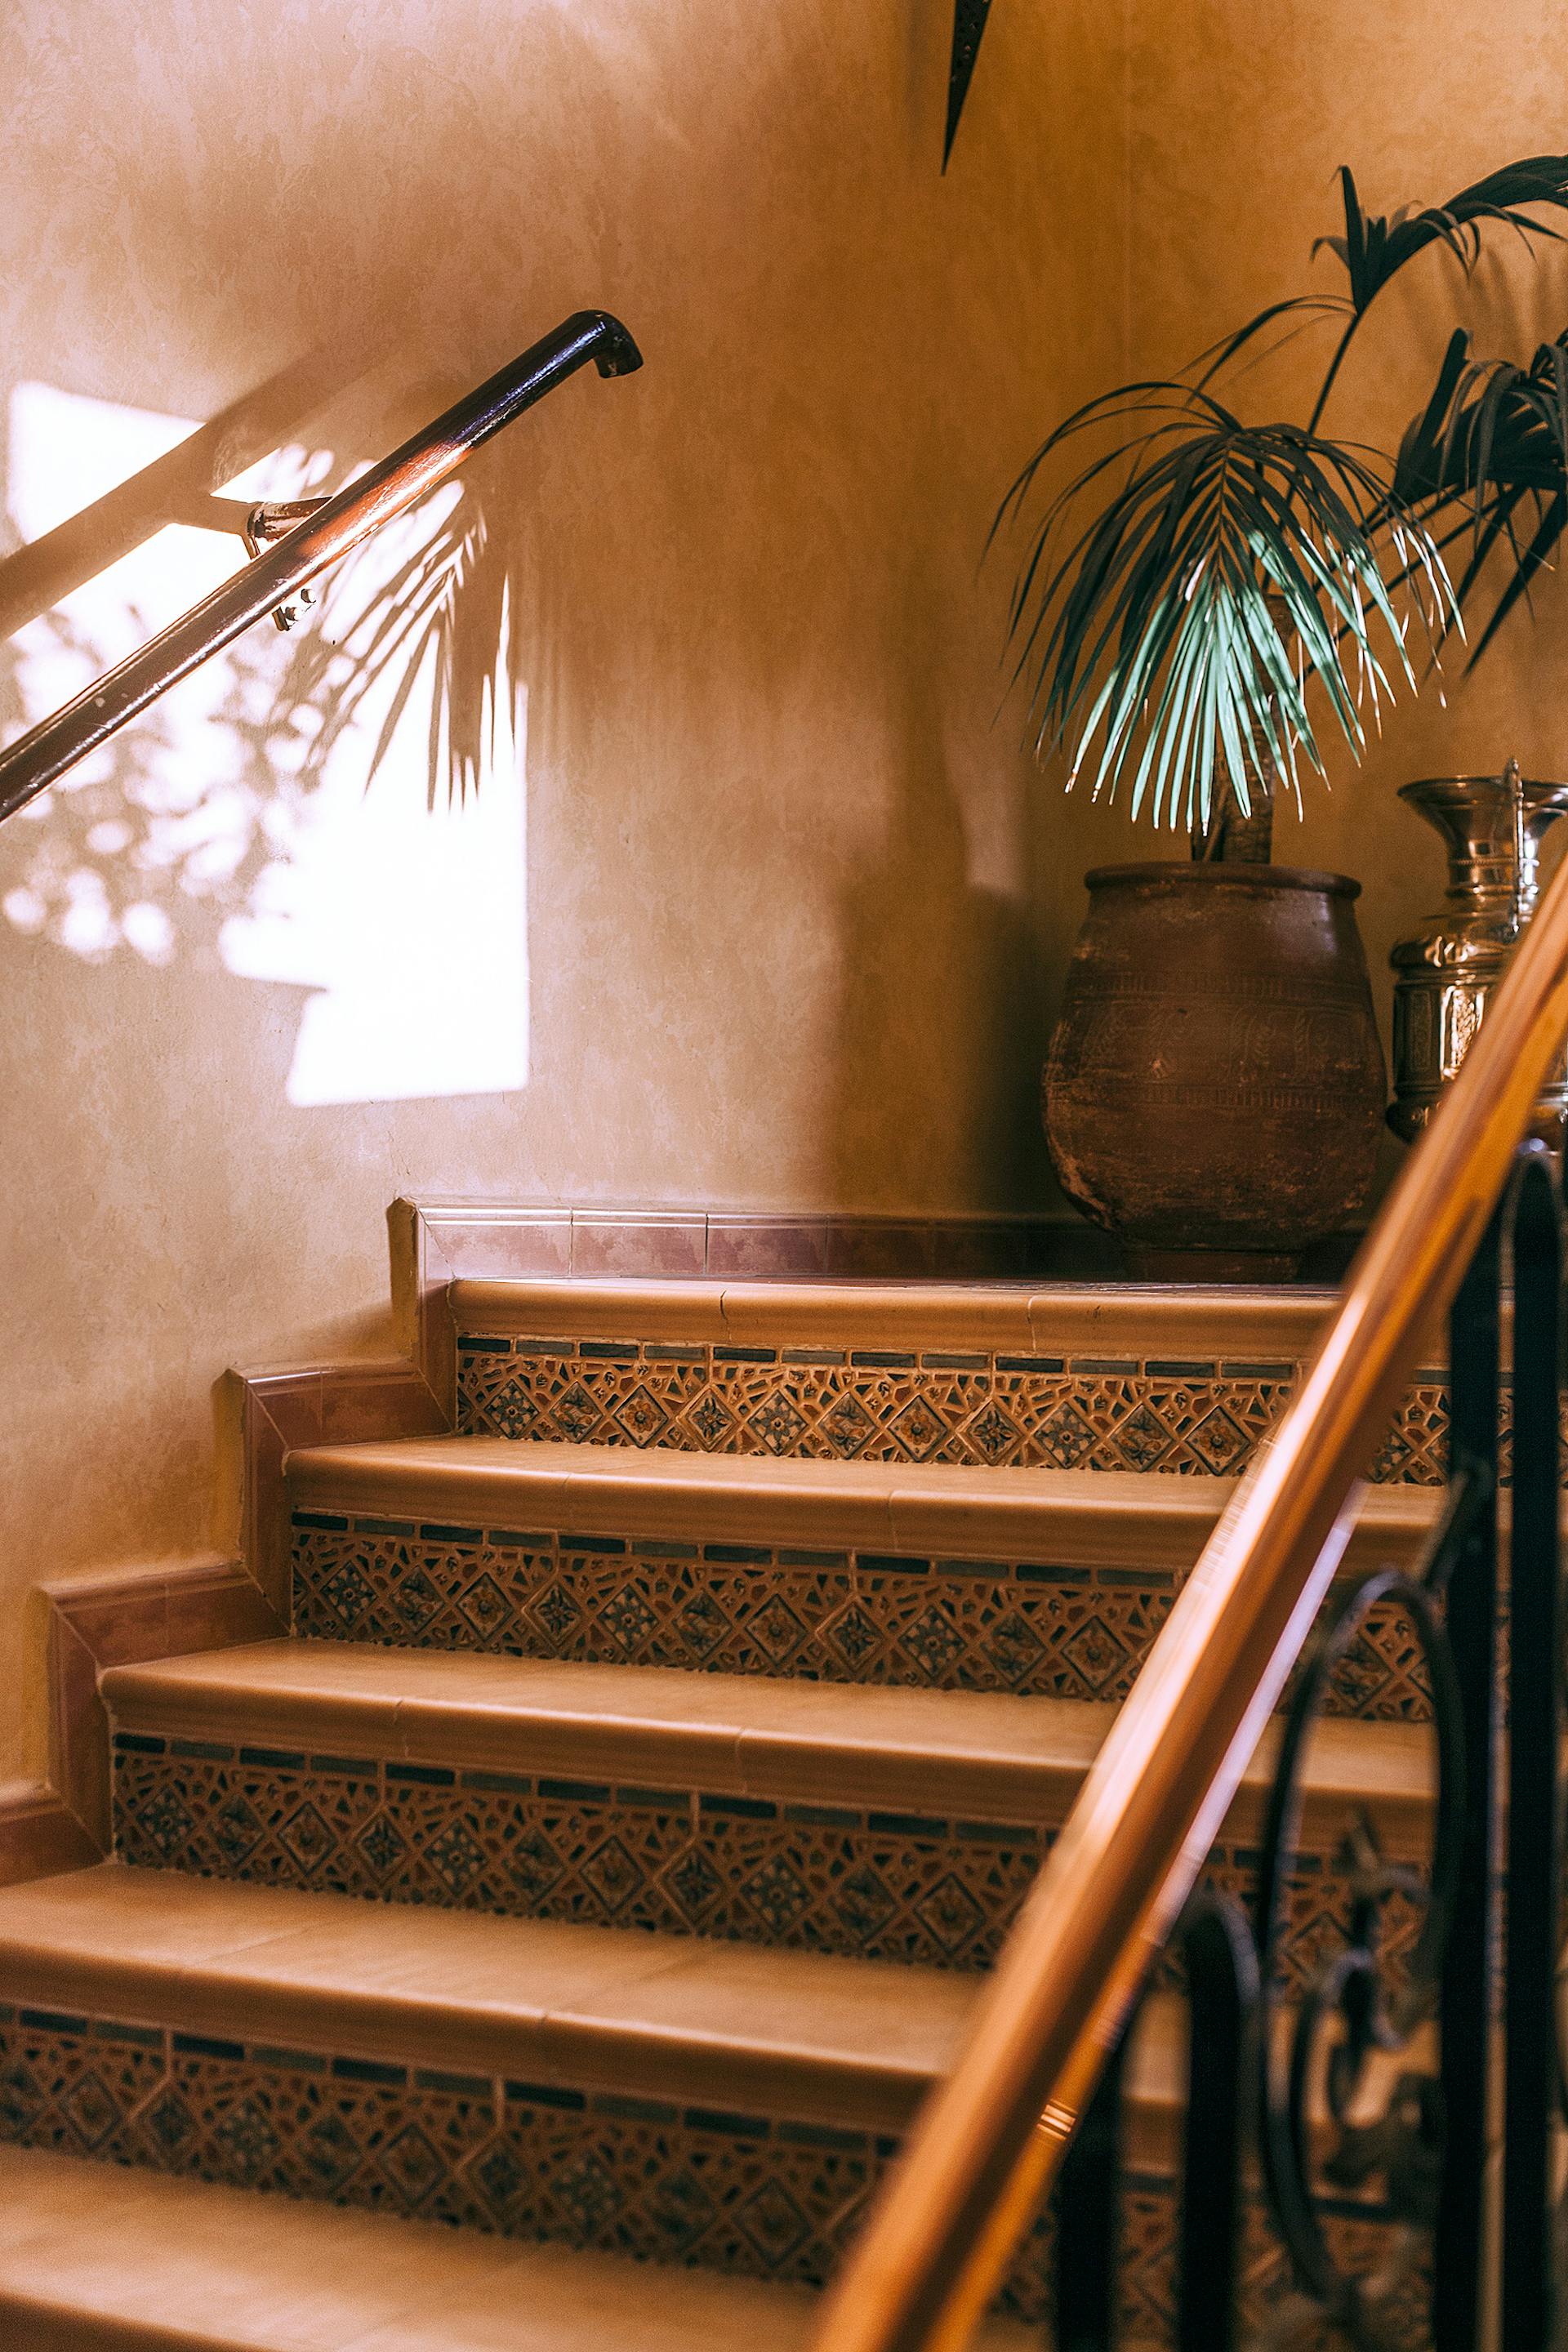 Una escalera de piedra de color marrón en una casa | Fuente: Pexels